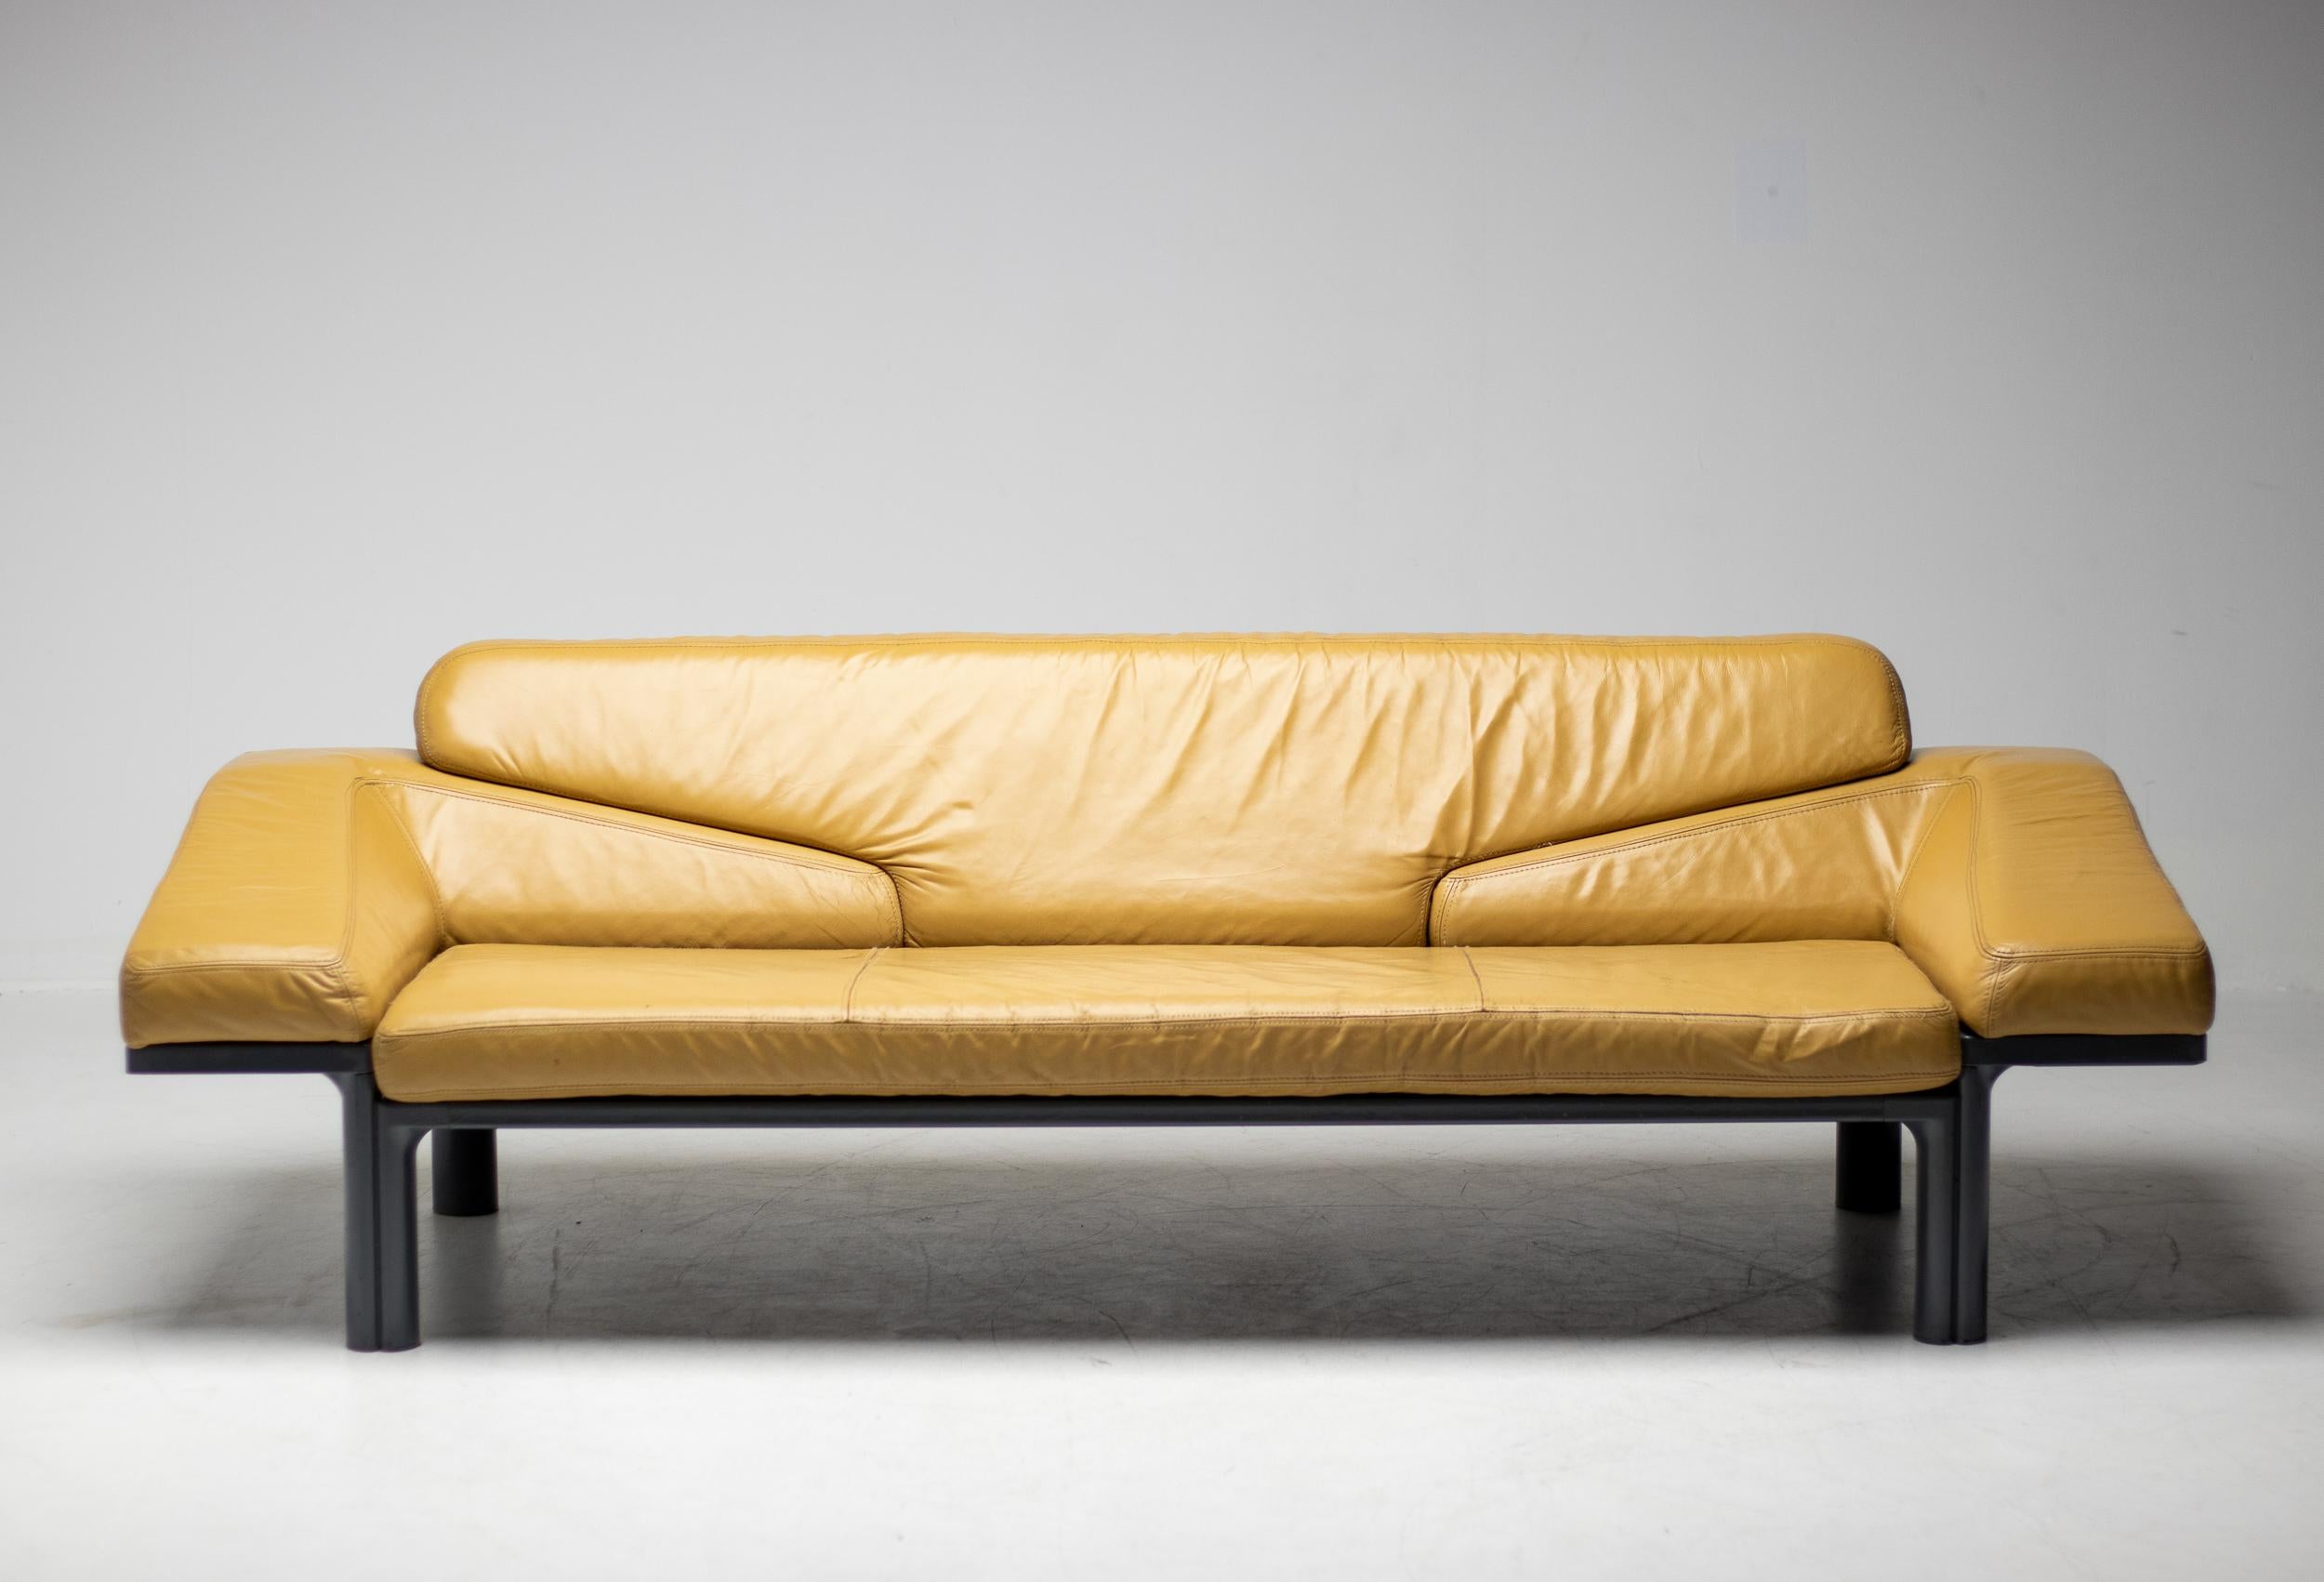 Canapé polyvalent de l'ère spatiale conçu en 1972 par Wolfgang Muller pour Artifort.
Lorsque les accoudoirs sont retirés, le canapé offre une table d'appoint de chaque côté, une transformation très pratique.
Le cuir est en bon état et encore souple,